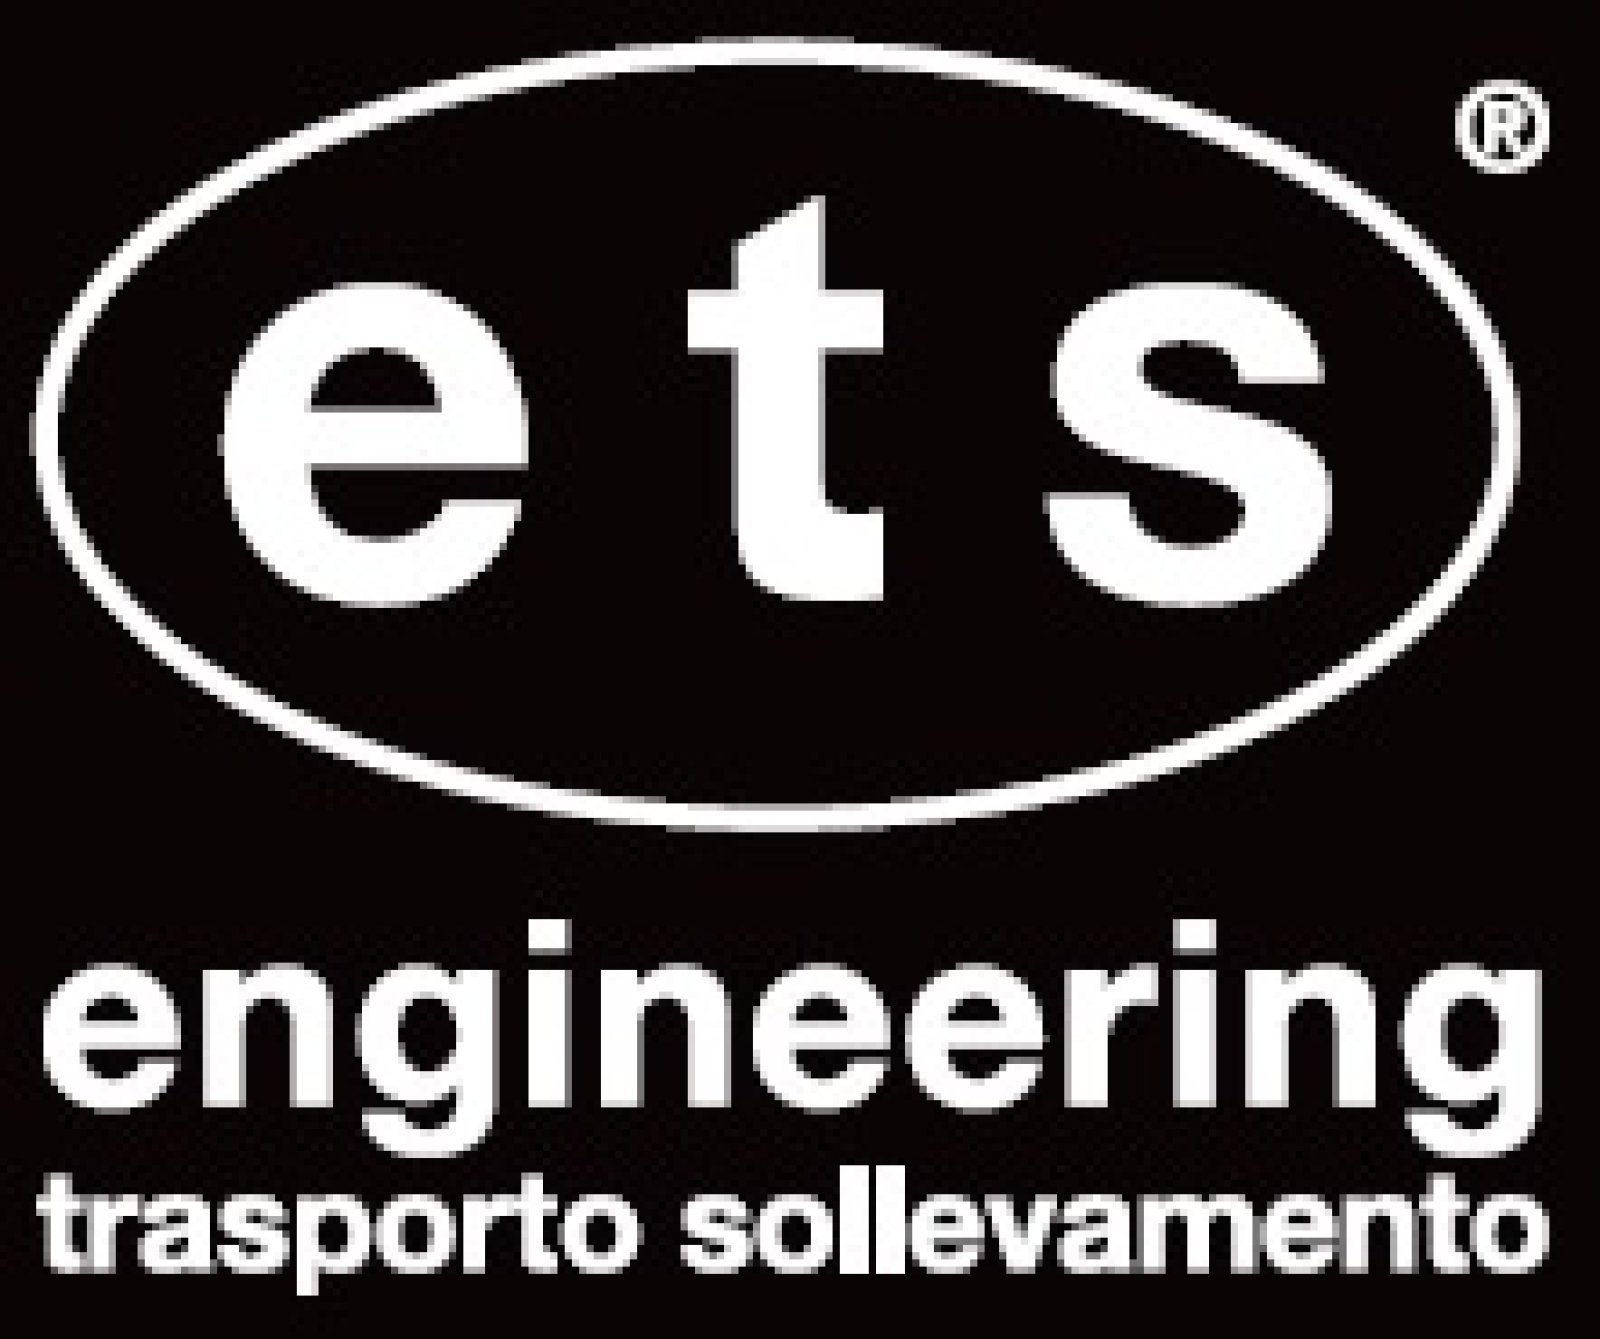 Logo E.T.S. engineering trasporto e sollevamento S.p.A.